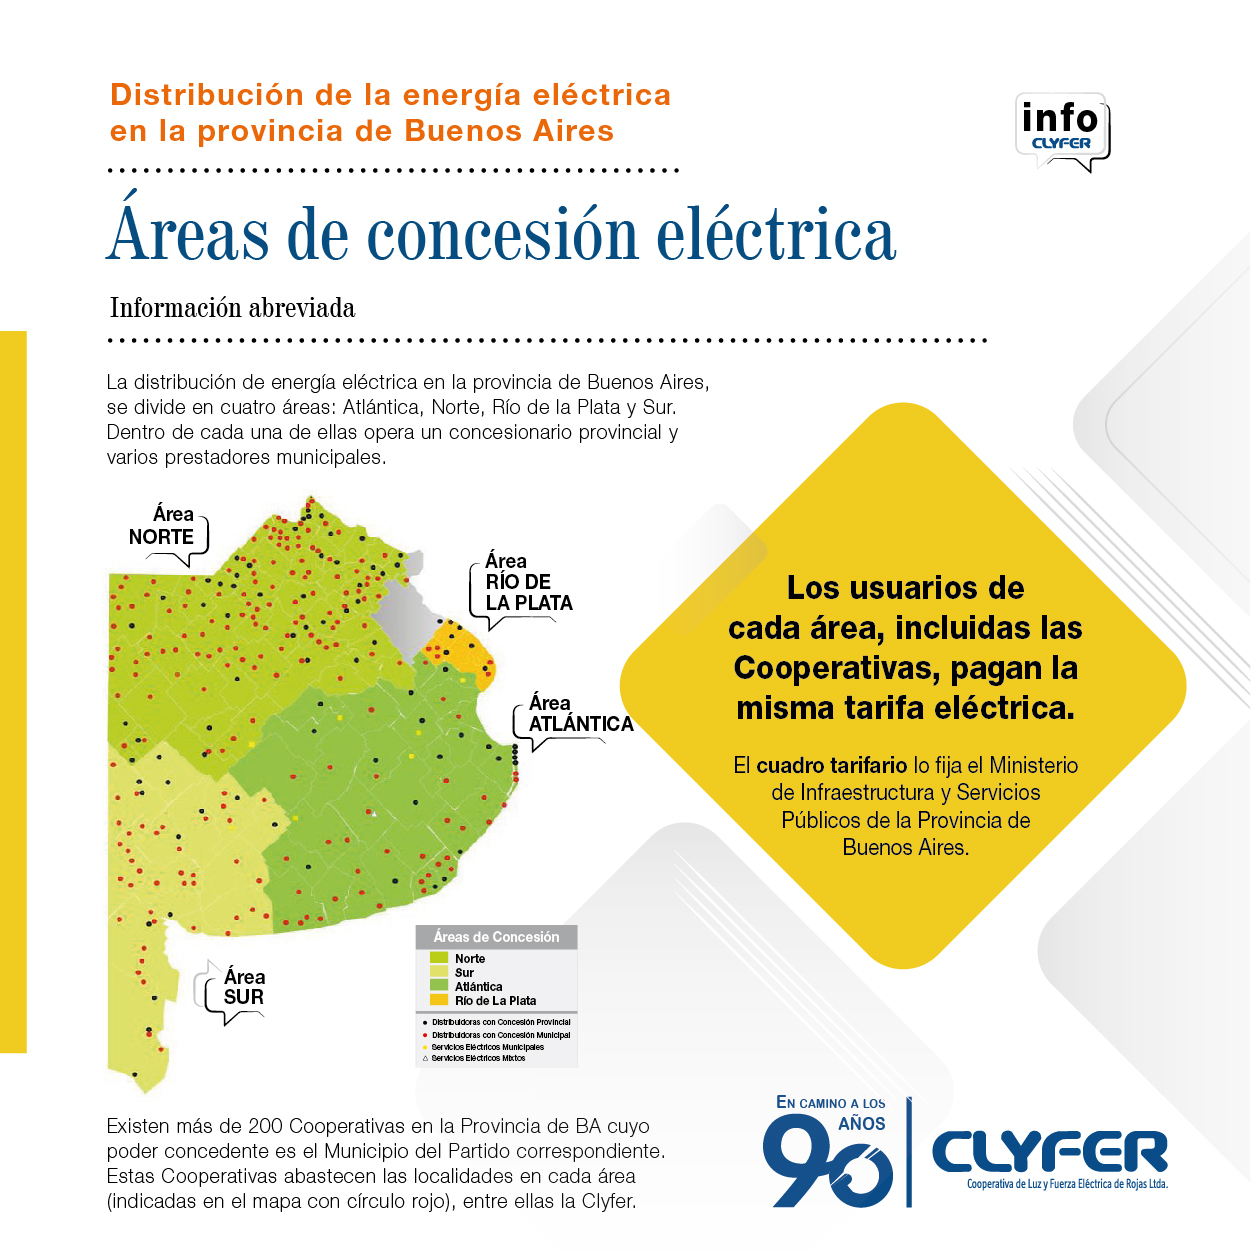 Areas de distribución eléctrica en la Provincia de Buenos Aires